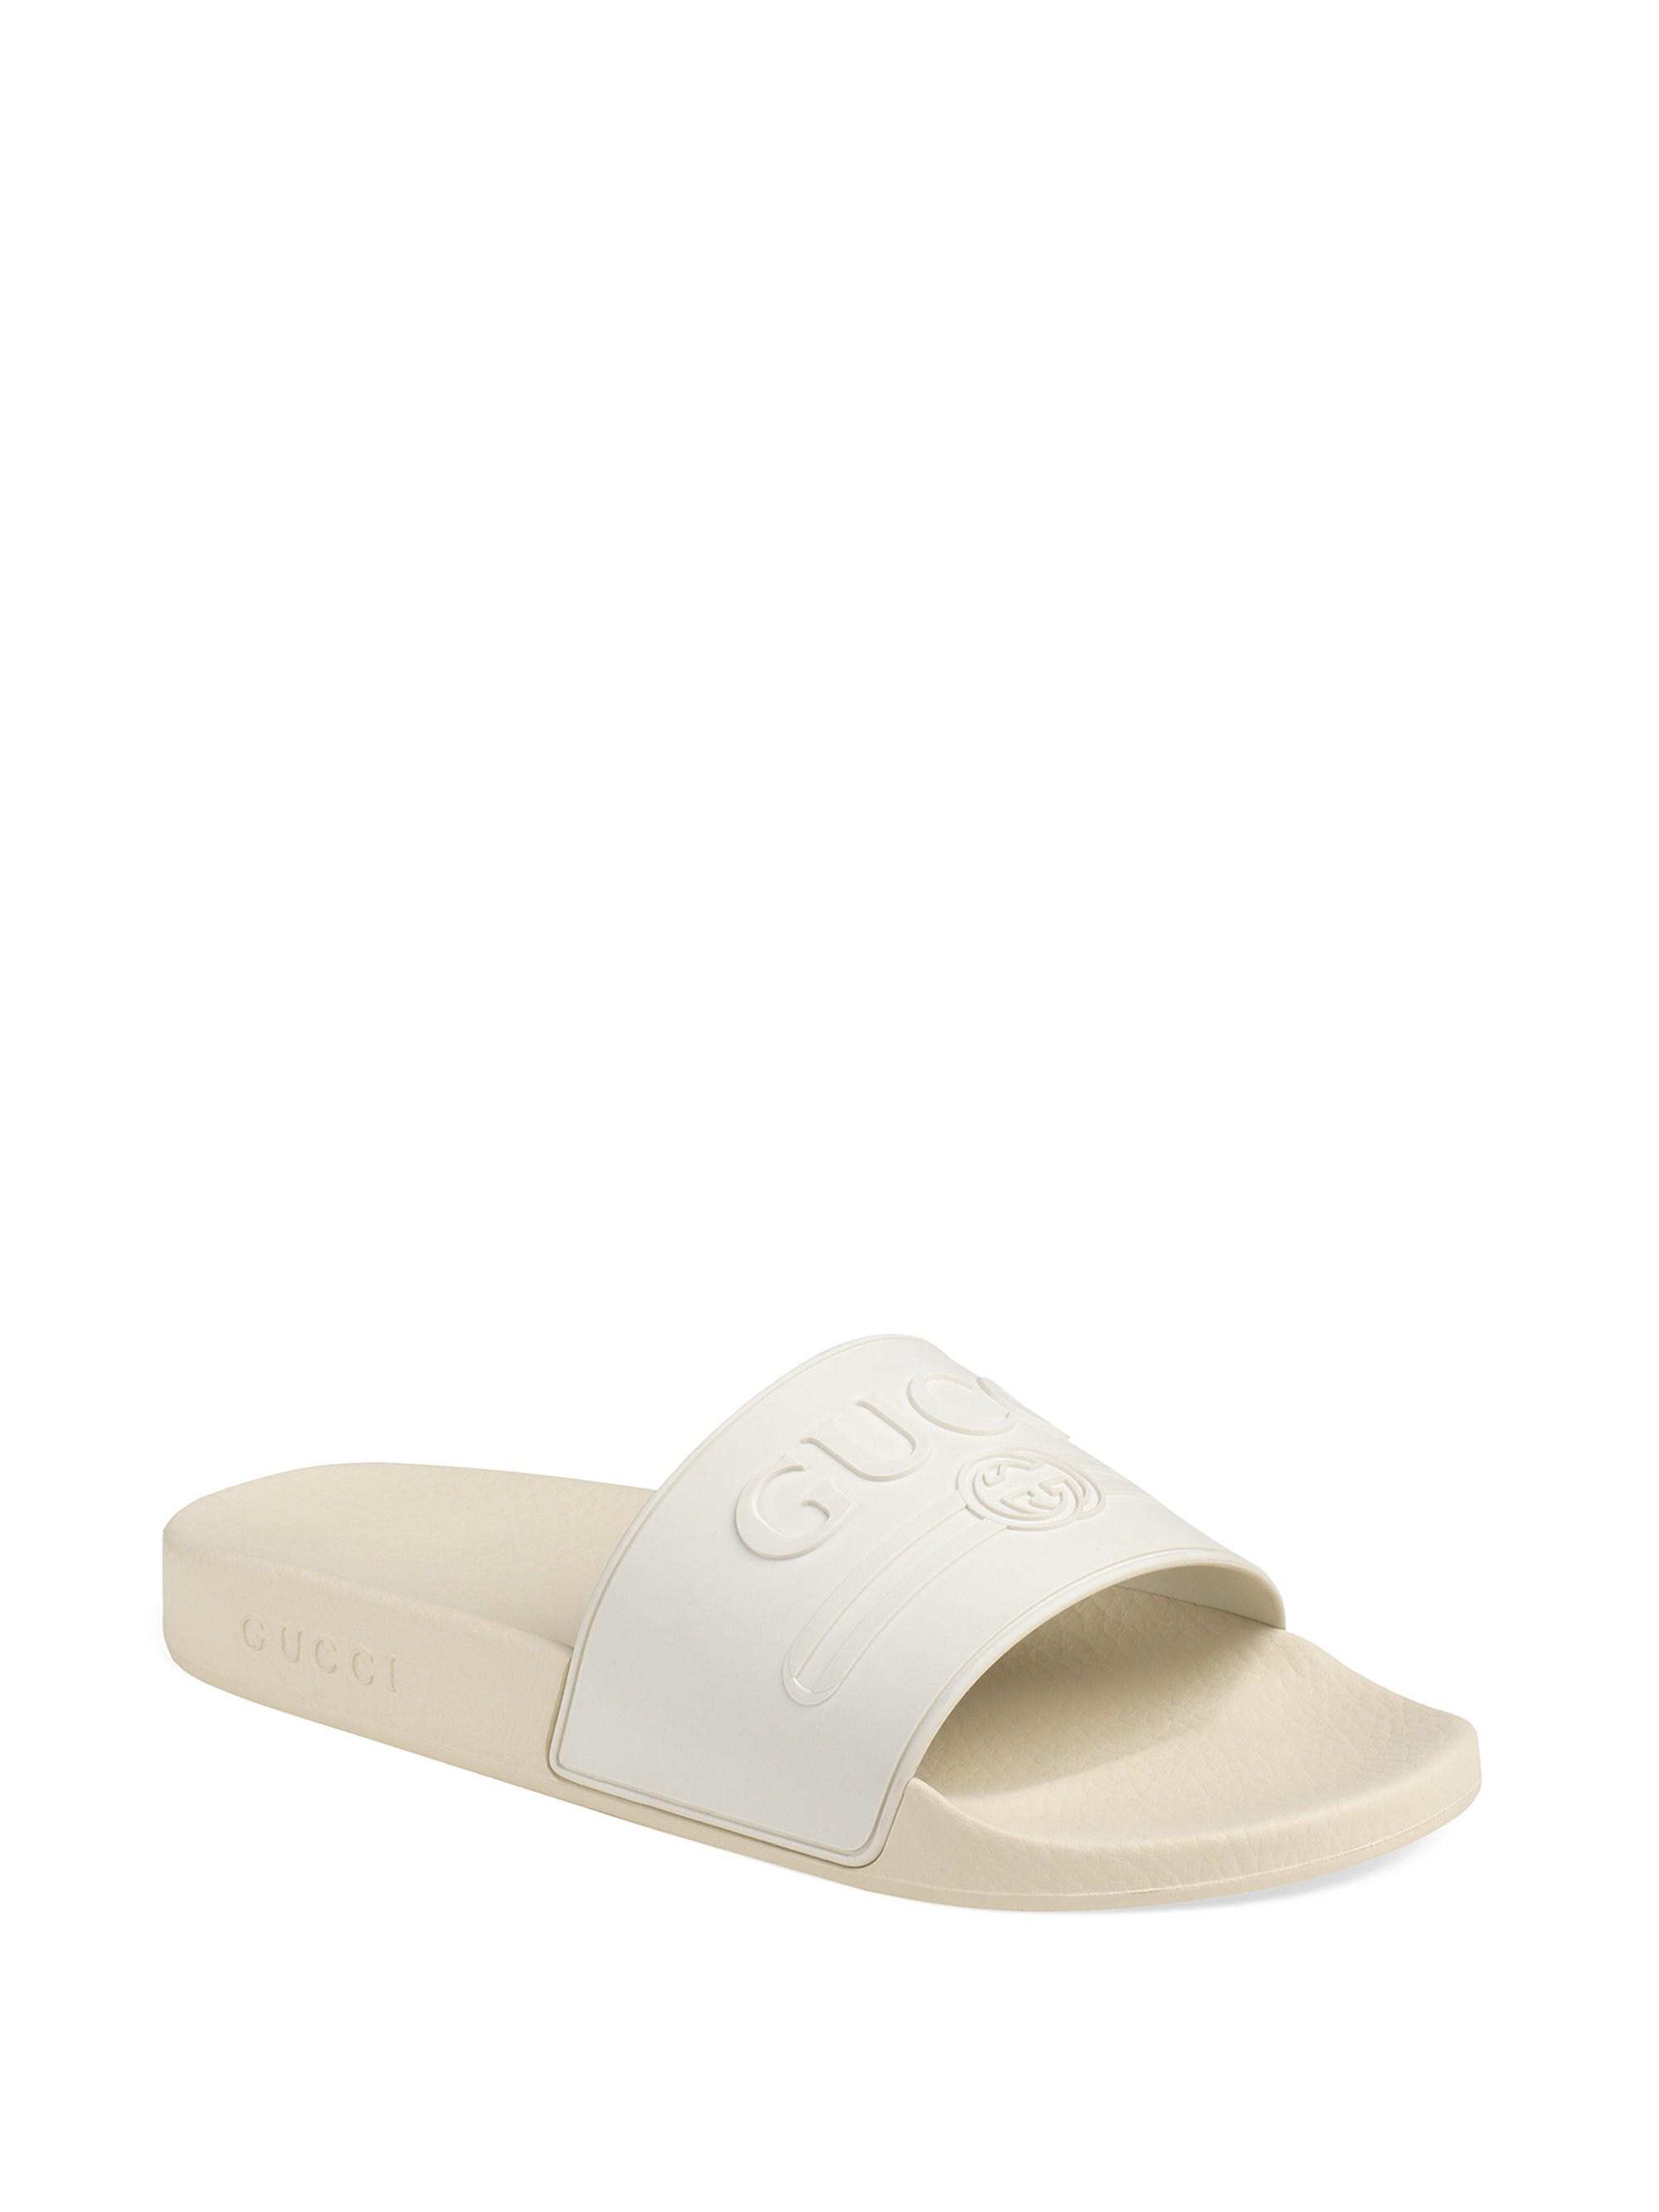 gucci white sandals